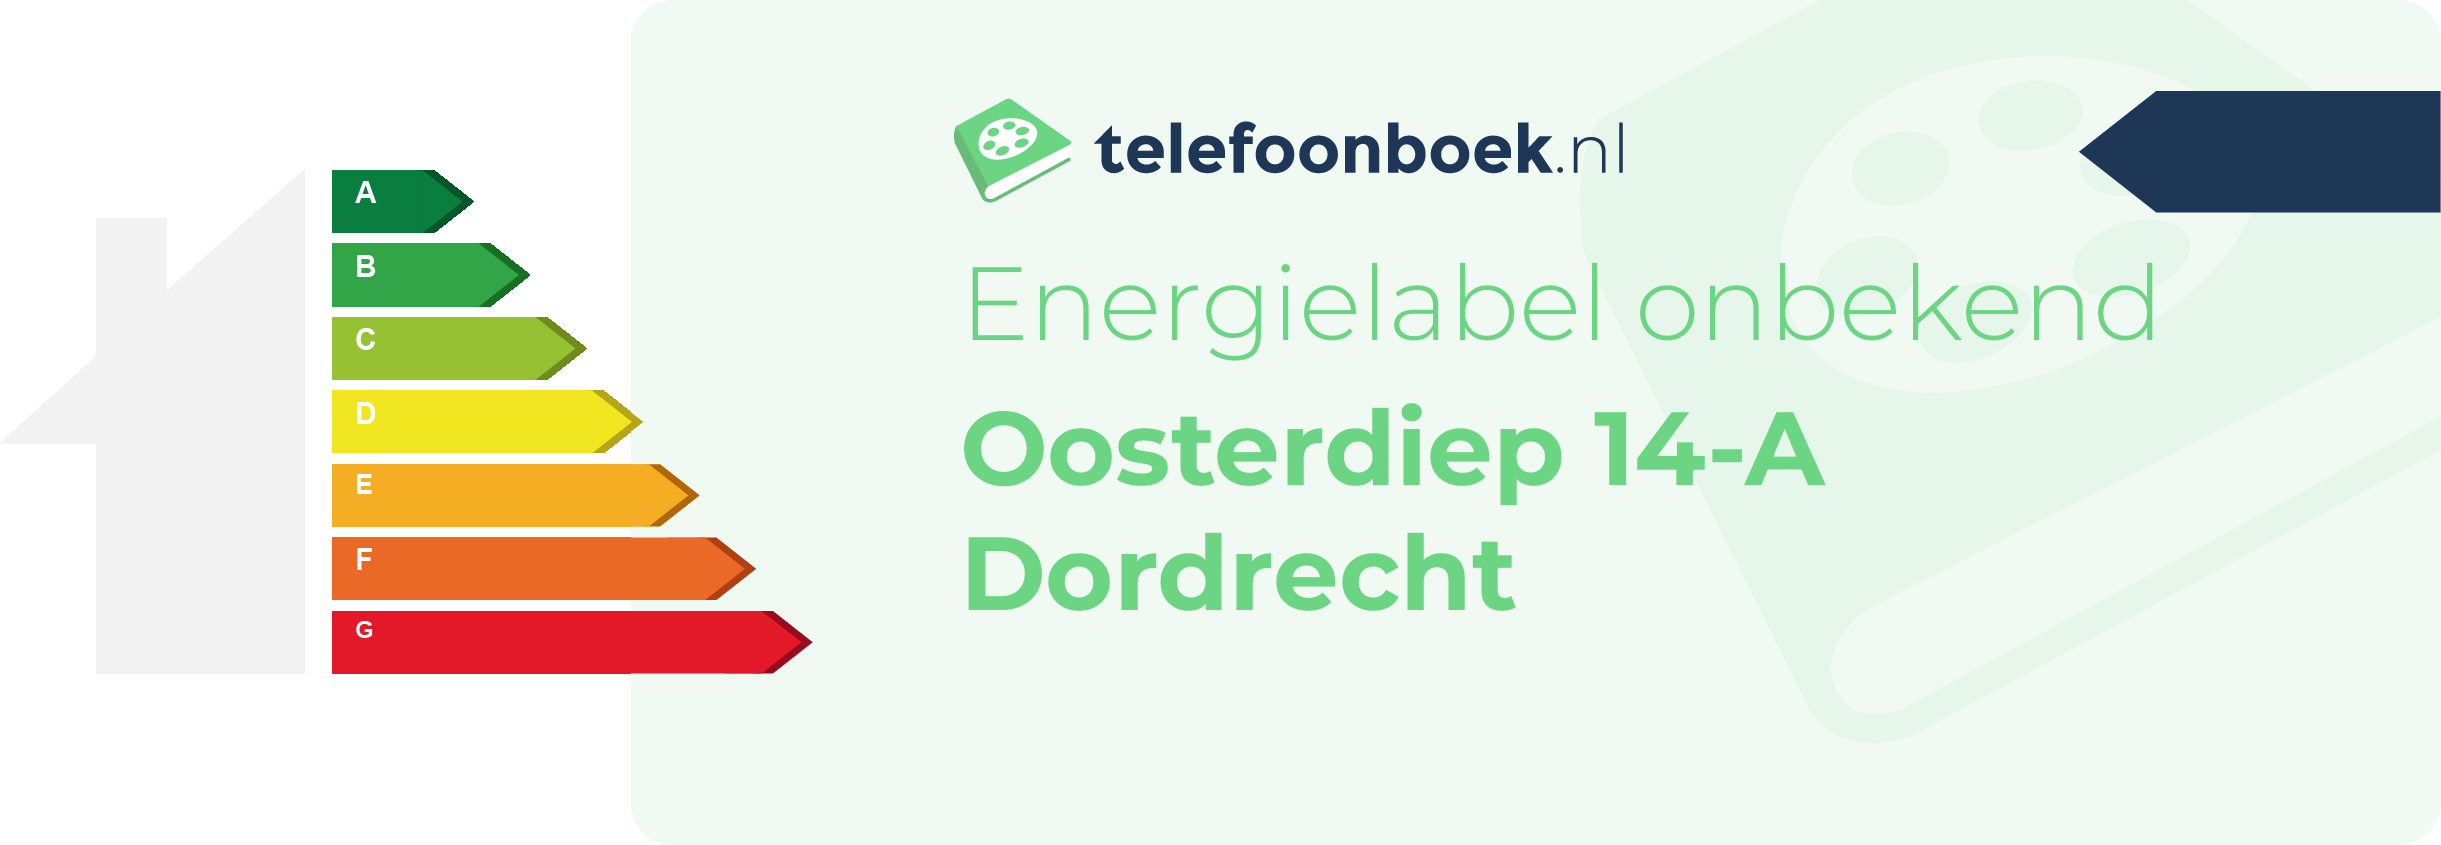 Energielabel Oosterdiep 14-A Dordrecht